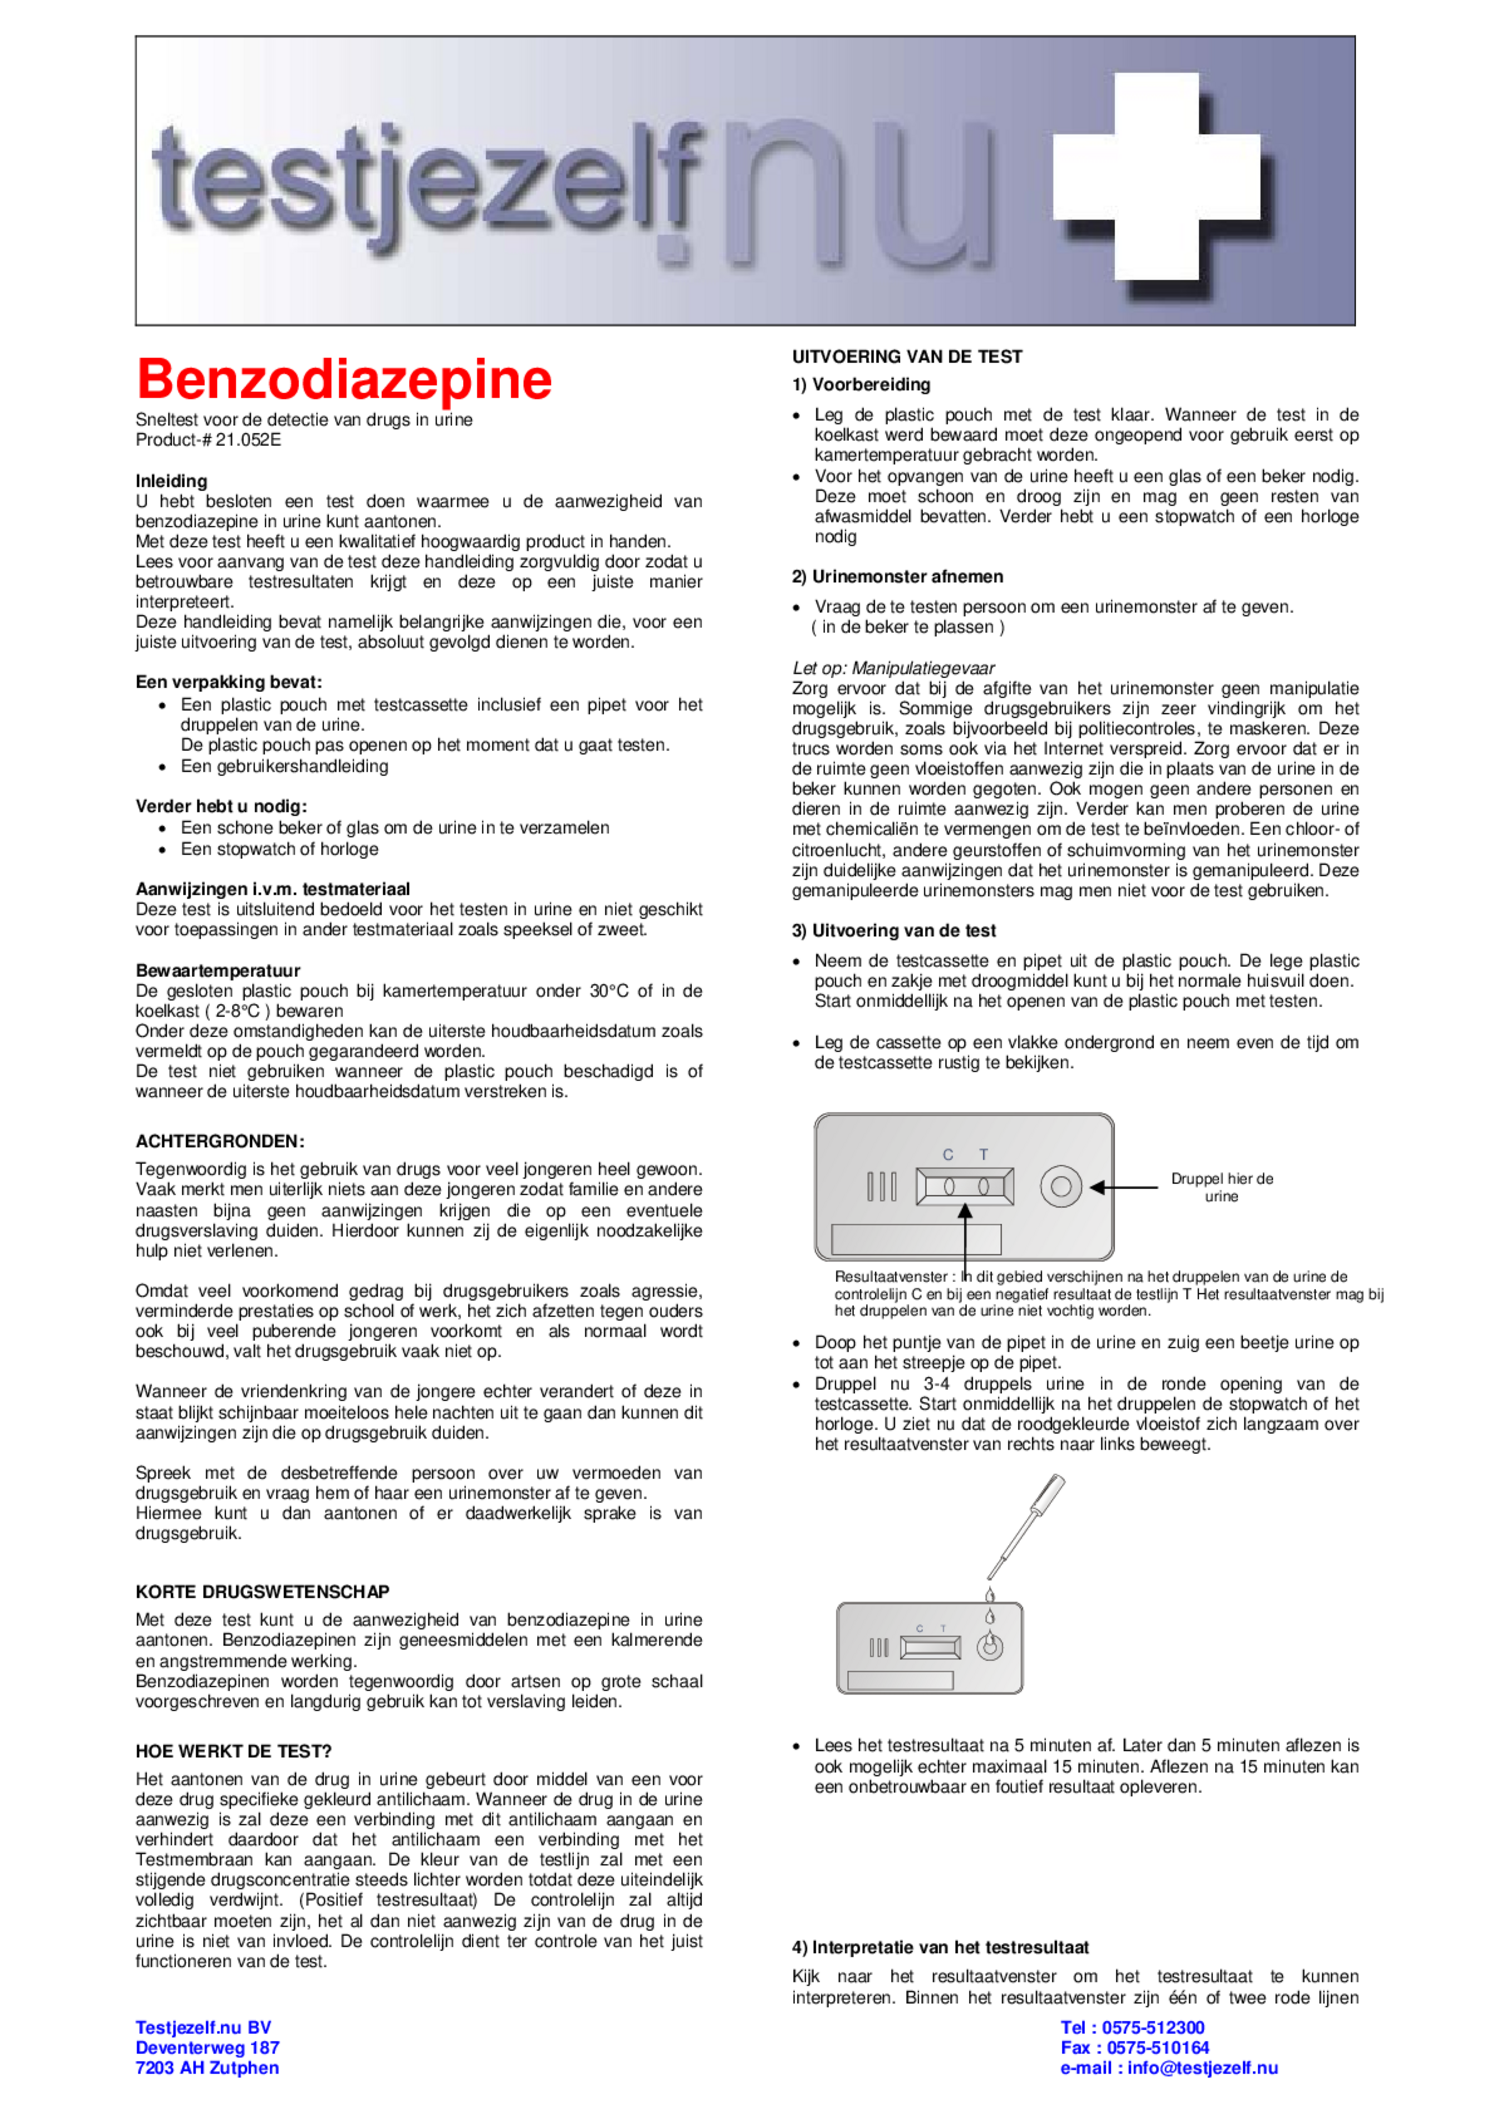 Drugstest Benzodiazepine 3 ST afbeelding van document #1, gebruiksaanwijzing